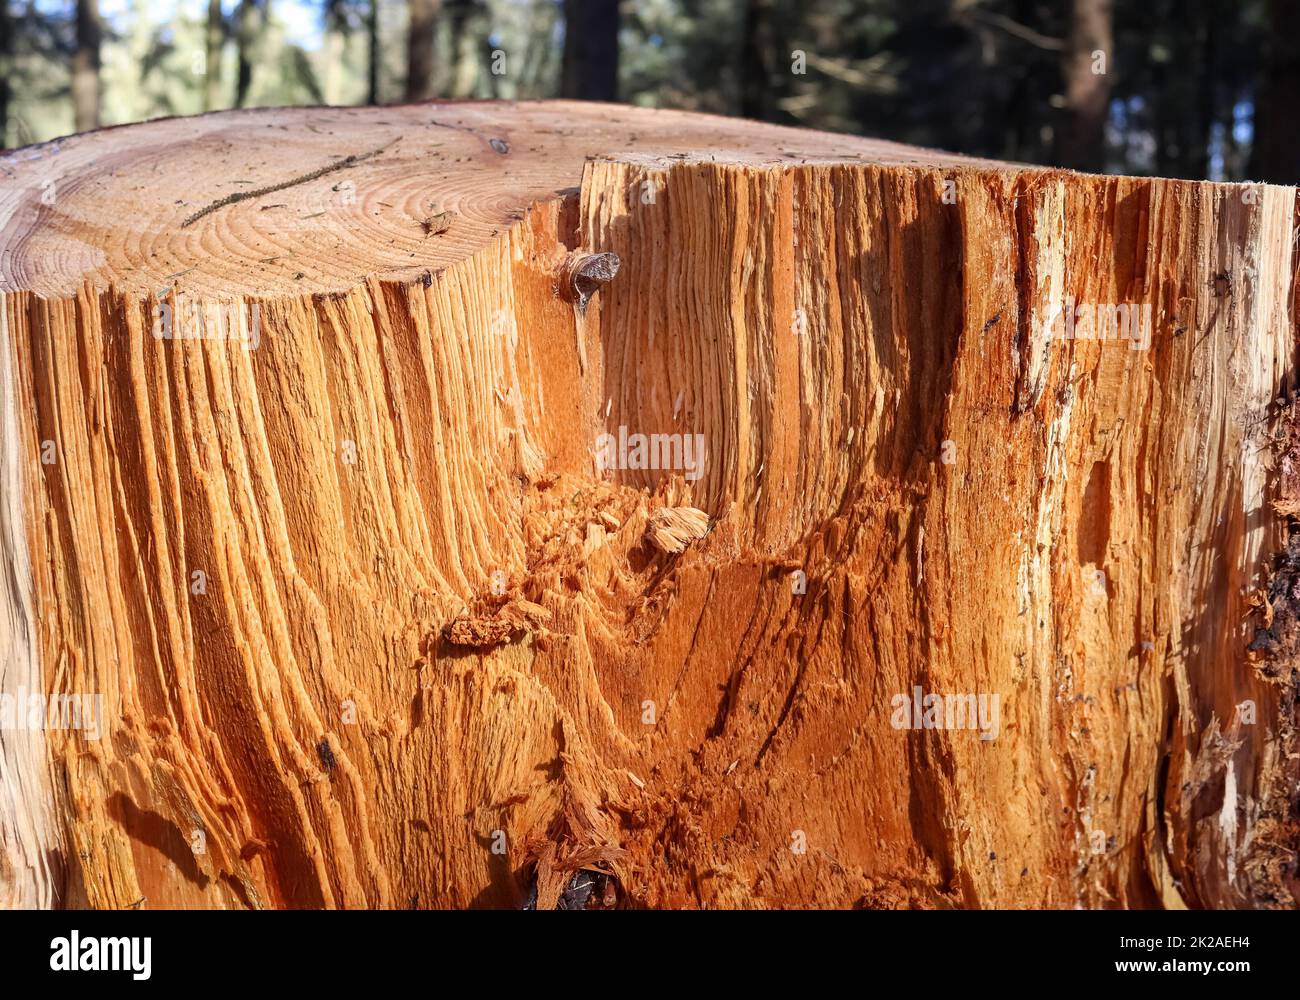 Bois scié frais dans une vue rapprochée. Texture détaillée des anneaux annuels sur une surface en bois. Banque D'Images